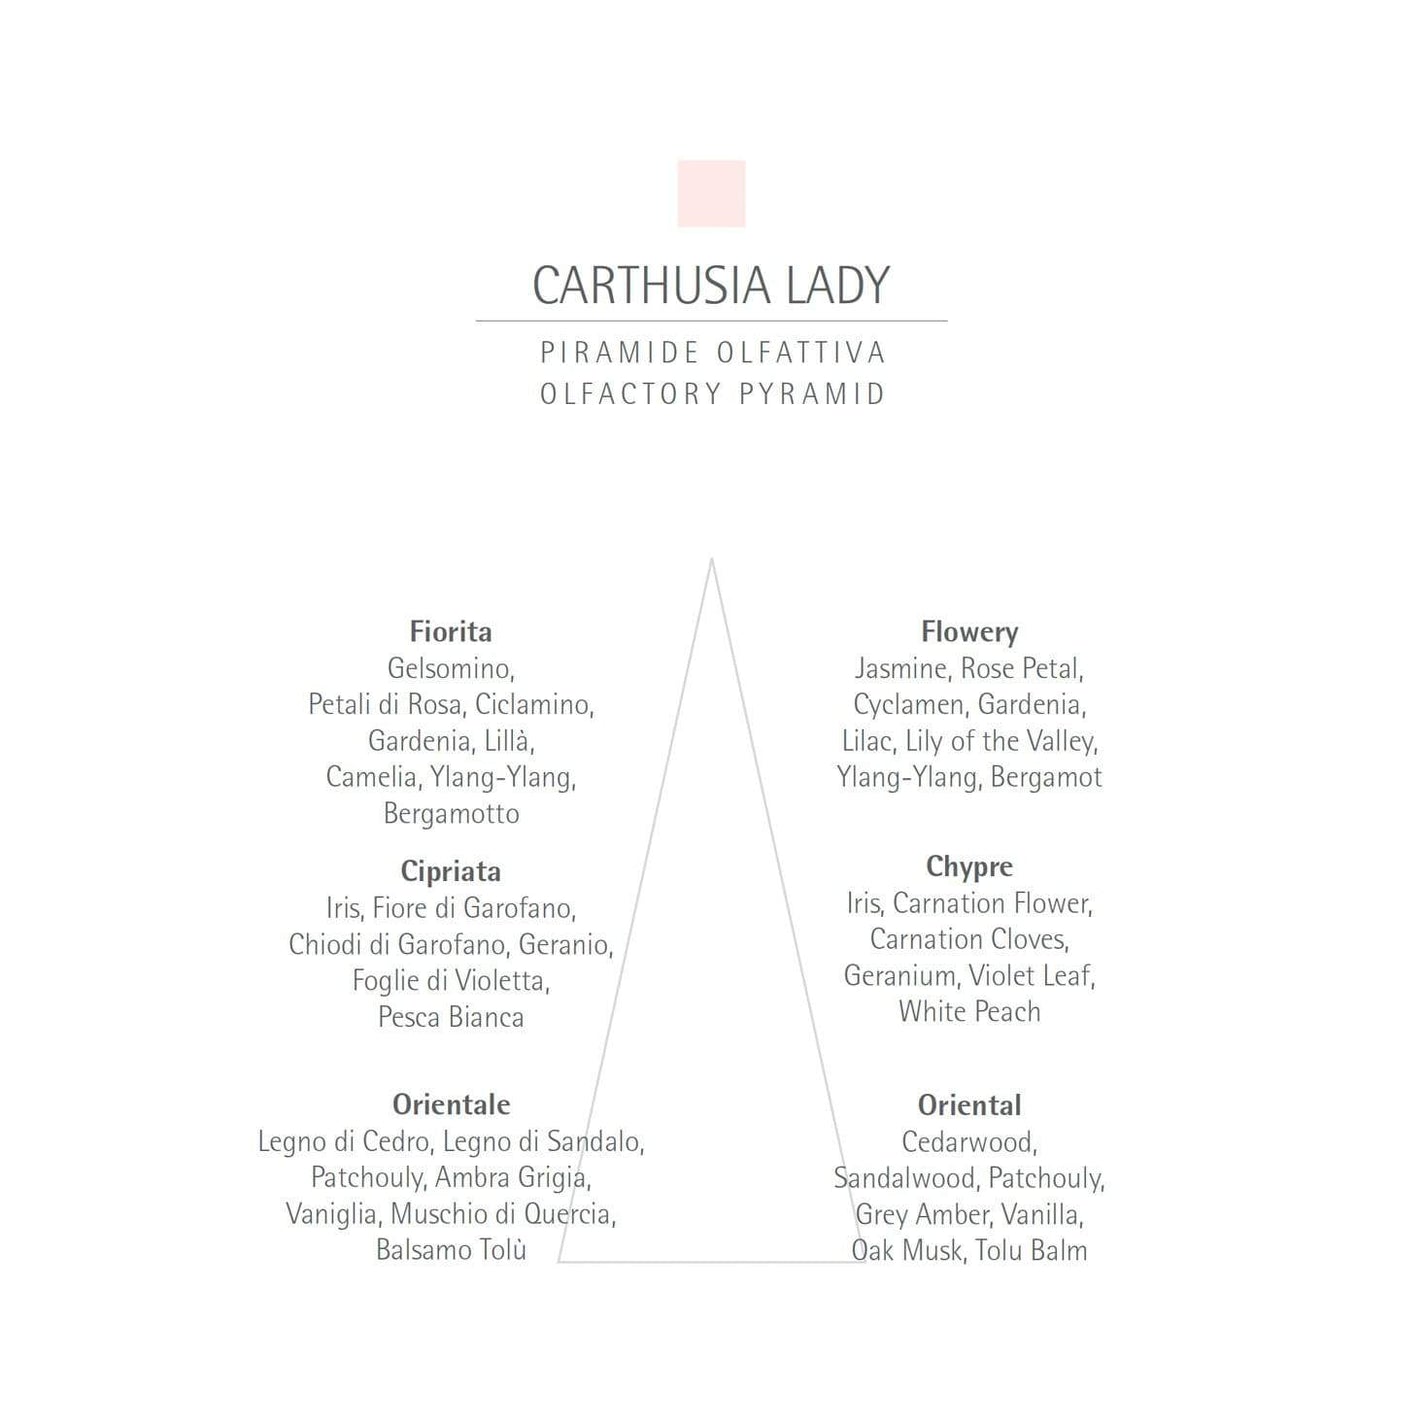 CARTHUSIA Carthusia Lady Eau de Parfum - 50ml